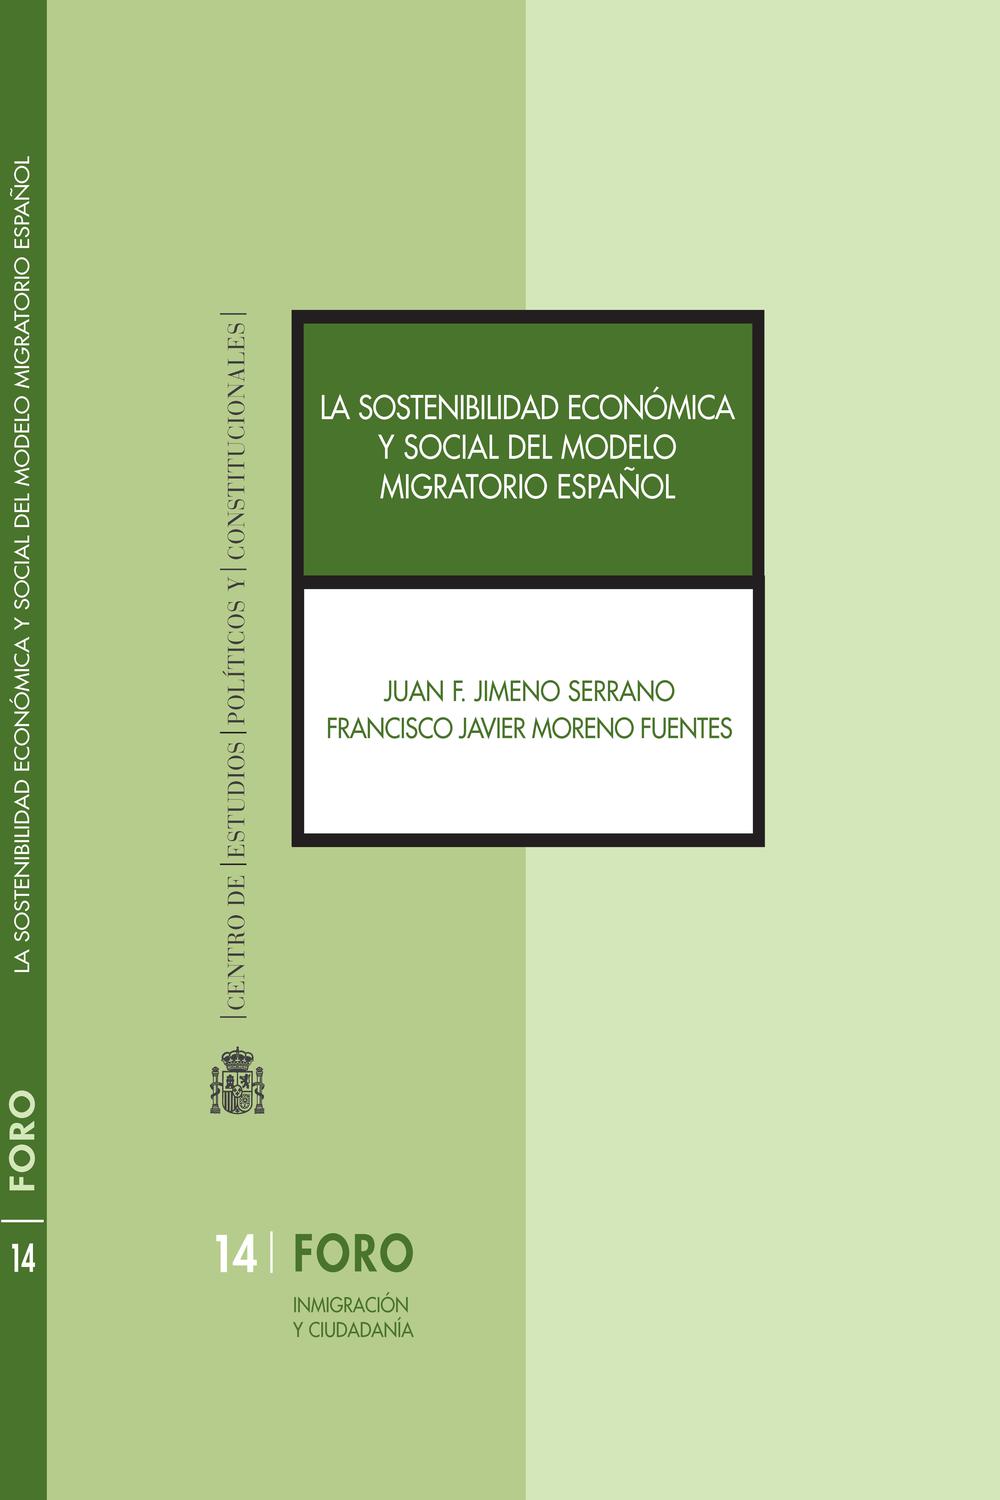 La sostenibilidad económica y social del modelo migratorio español - Juan F. Jimeno Serrano, Francisco Javier Moreno Fuentes